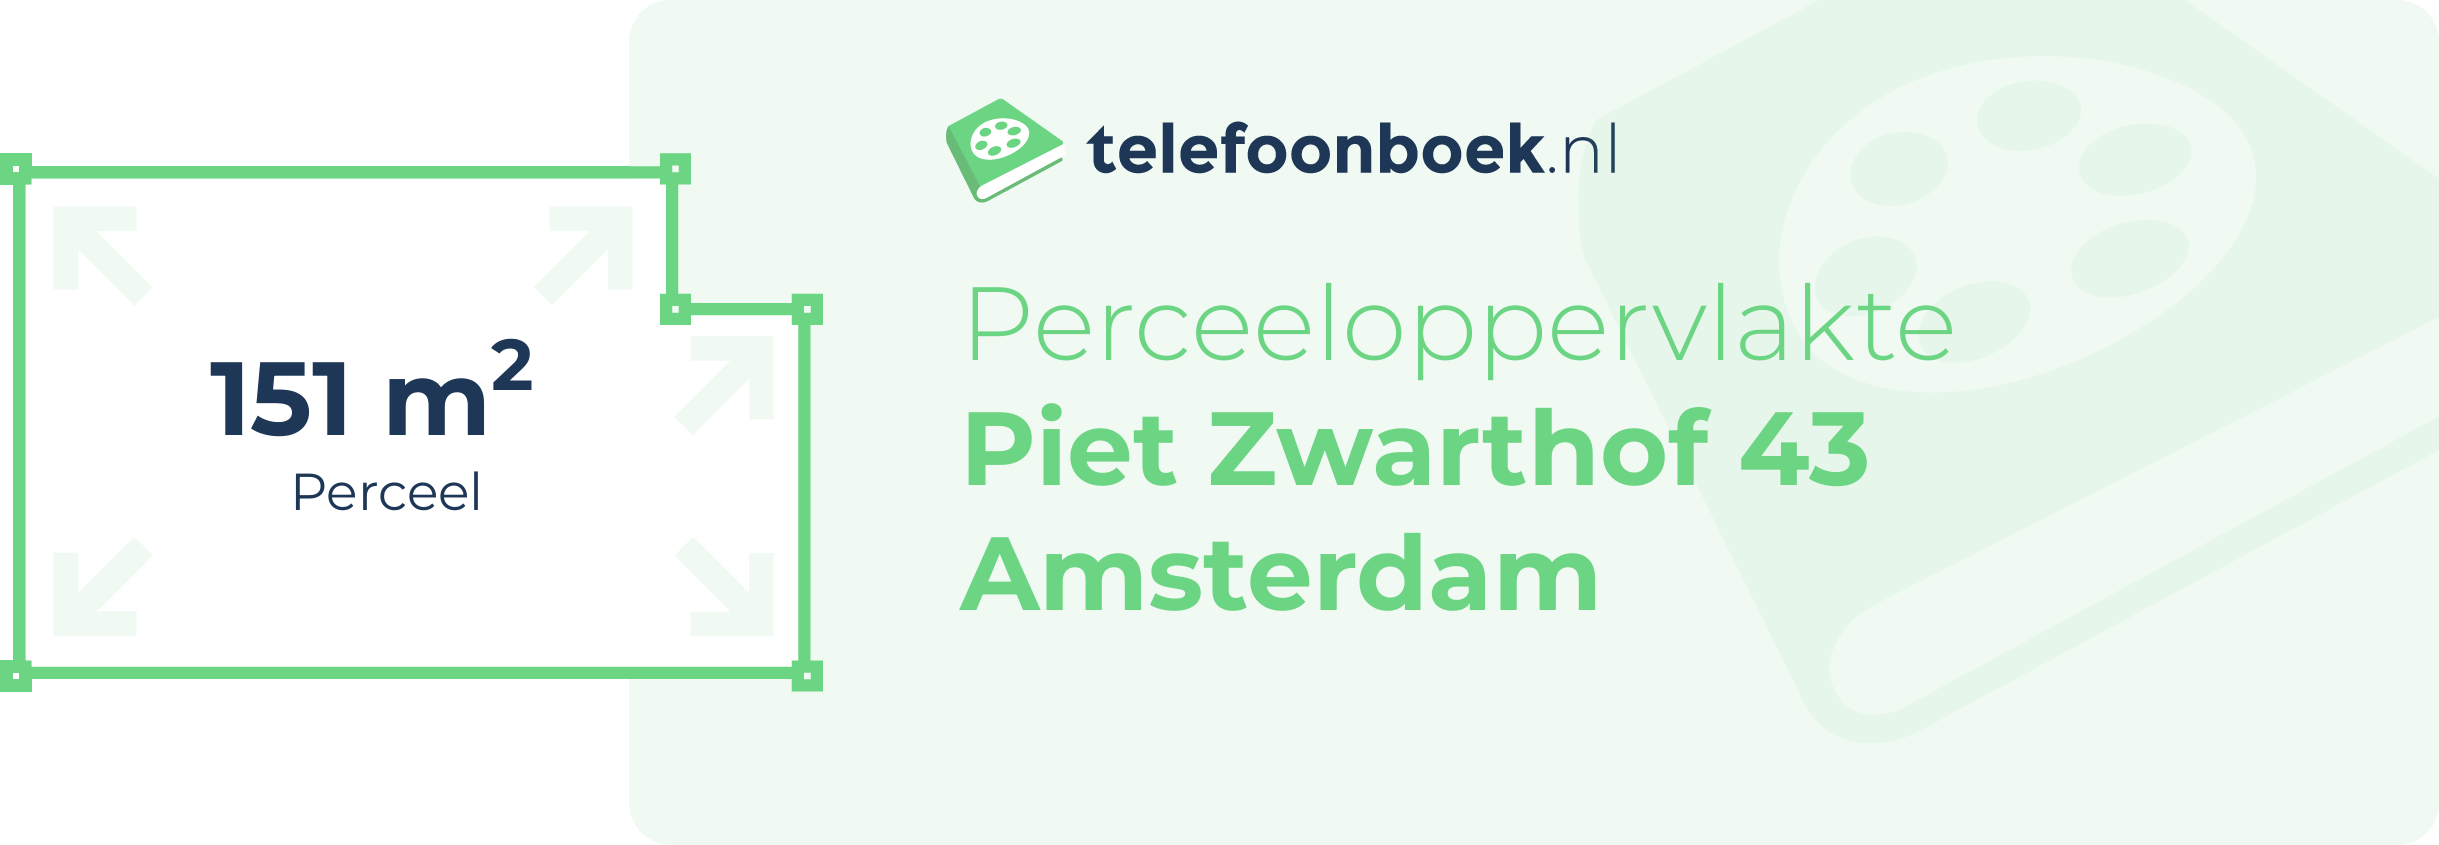 Perceeloppervlakte Piet Zwarthof 43 Amsterdam